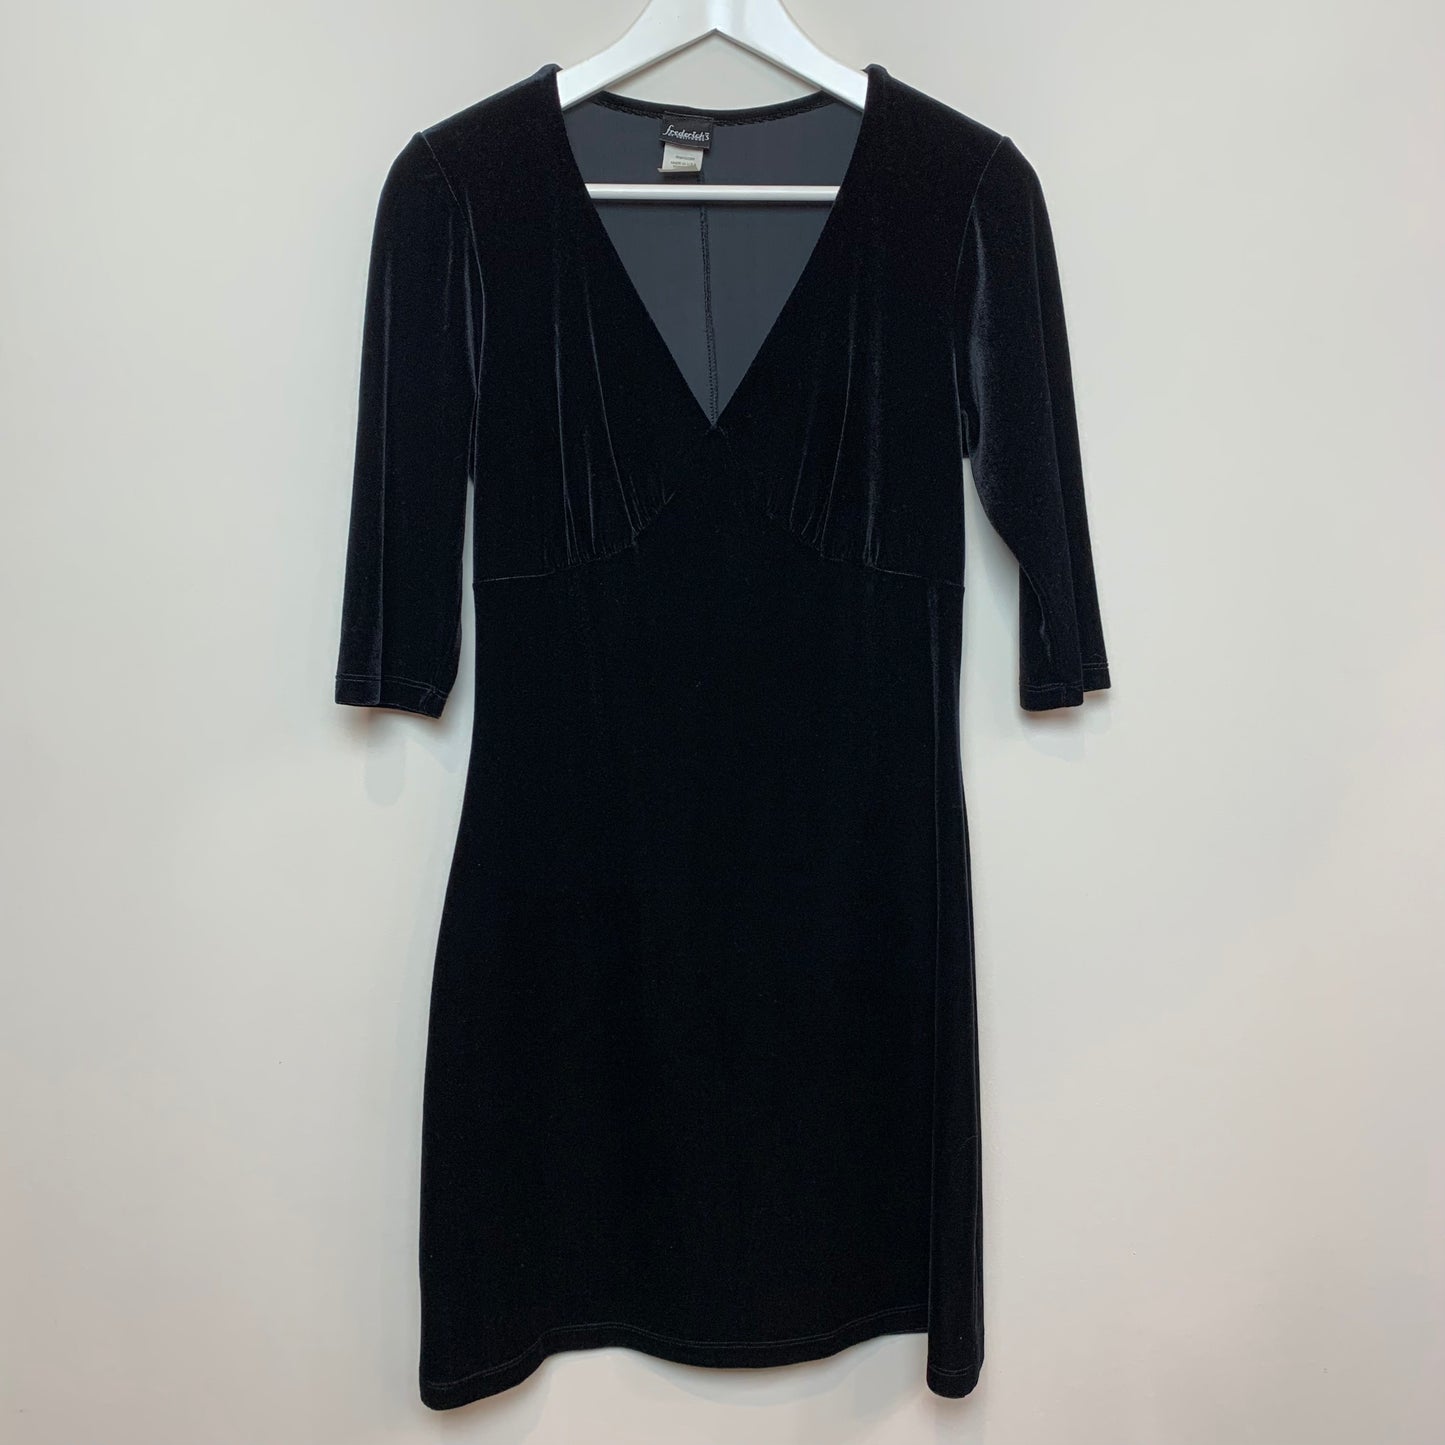 Vintage 90s Fredericks of Hollywood Black Velvet Dress Medium Made in the USA